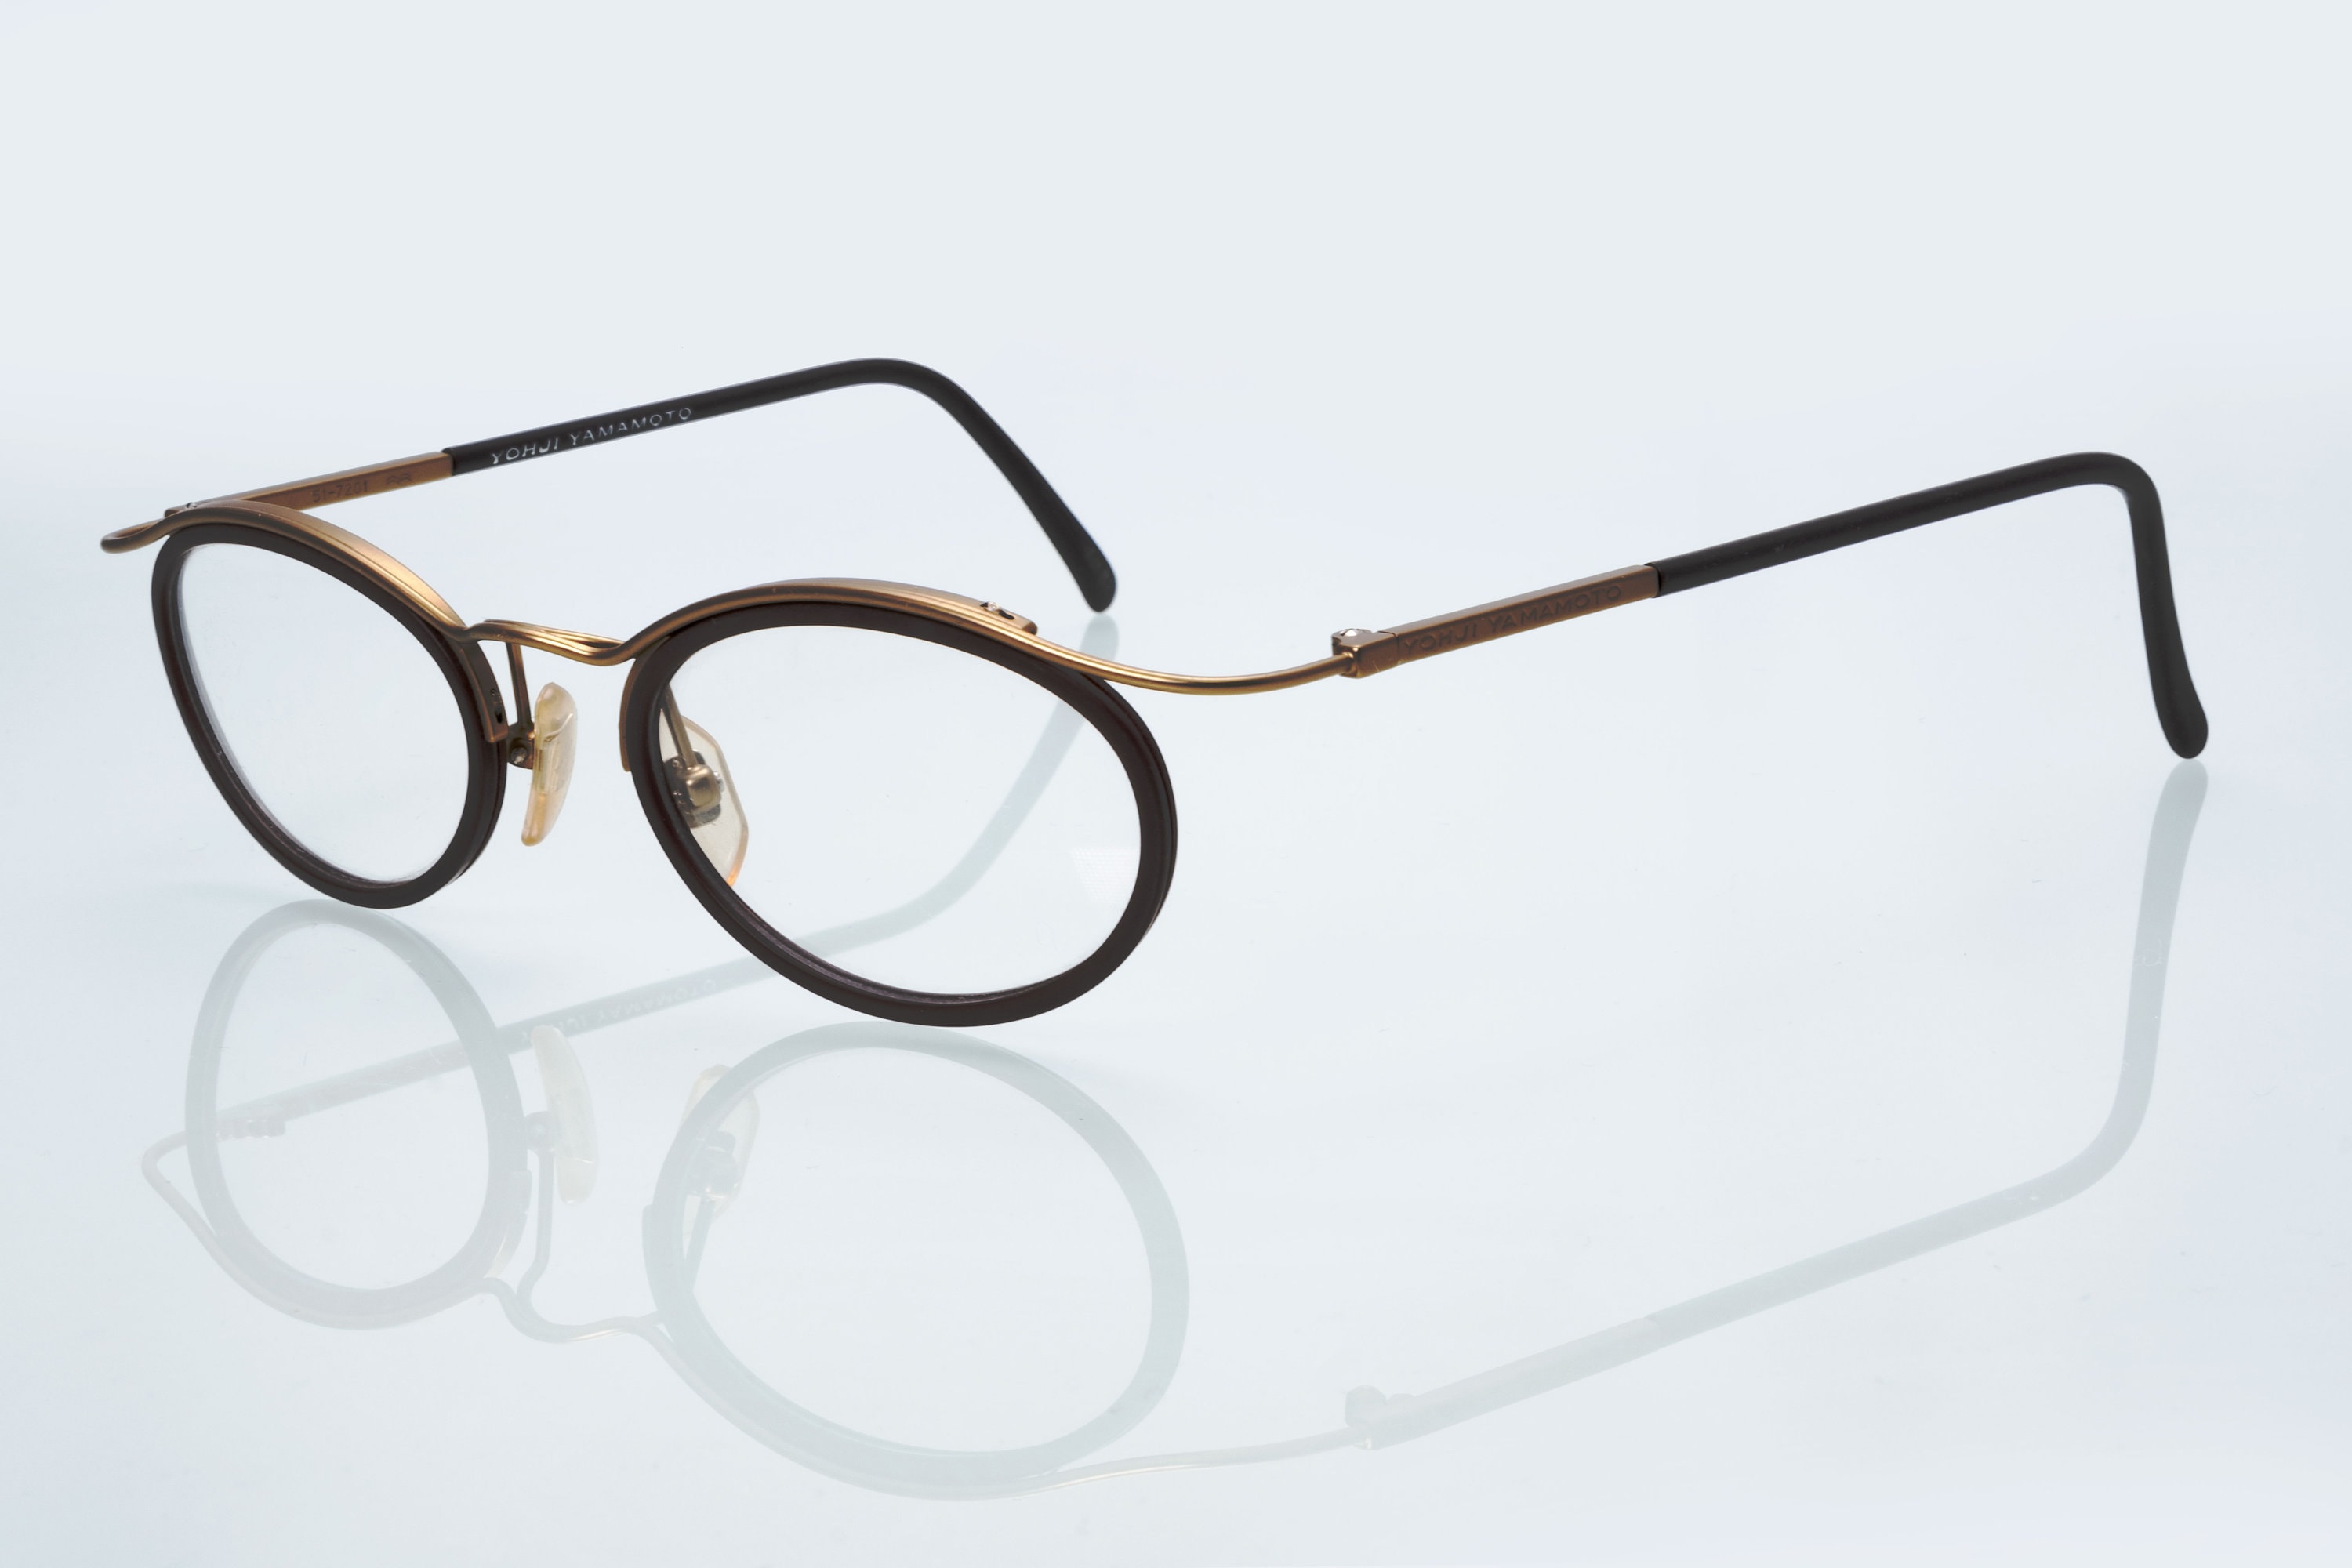 Yohji Yamamoto Glasses - Etsy